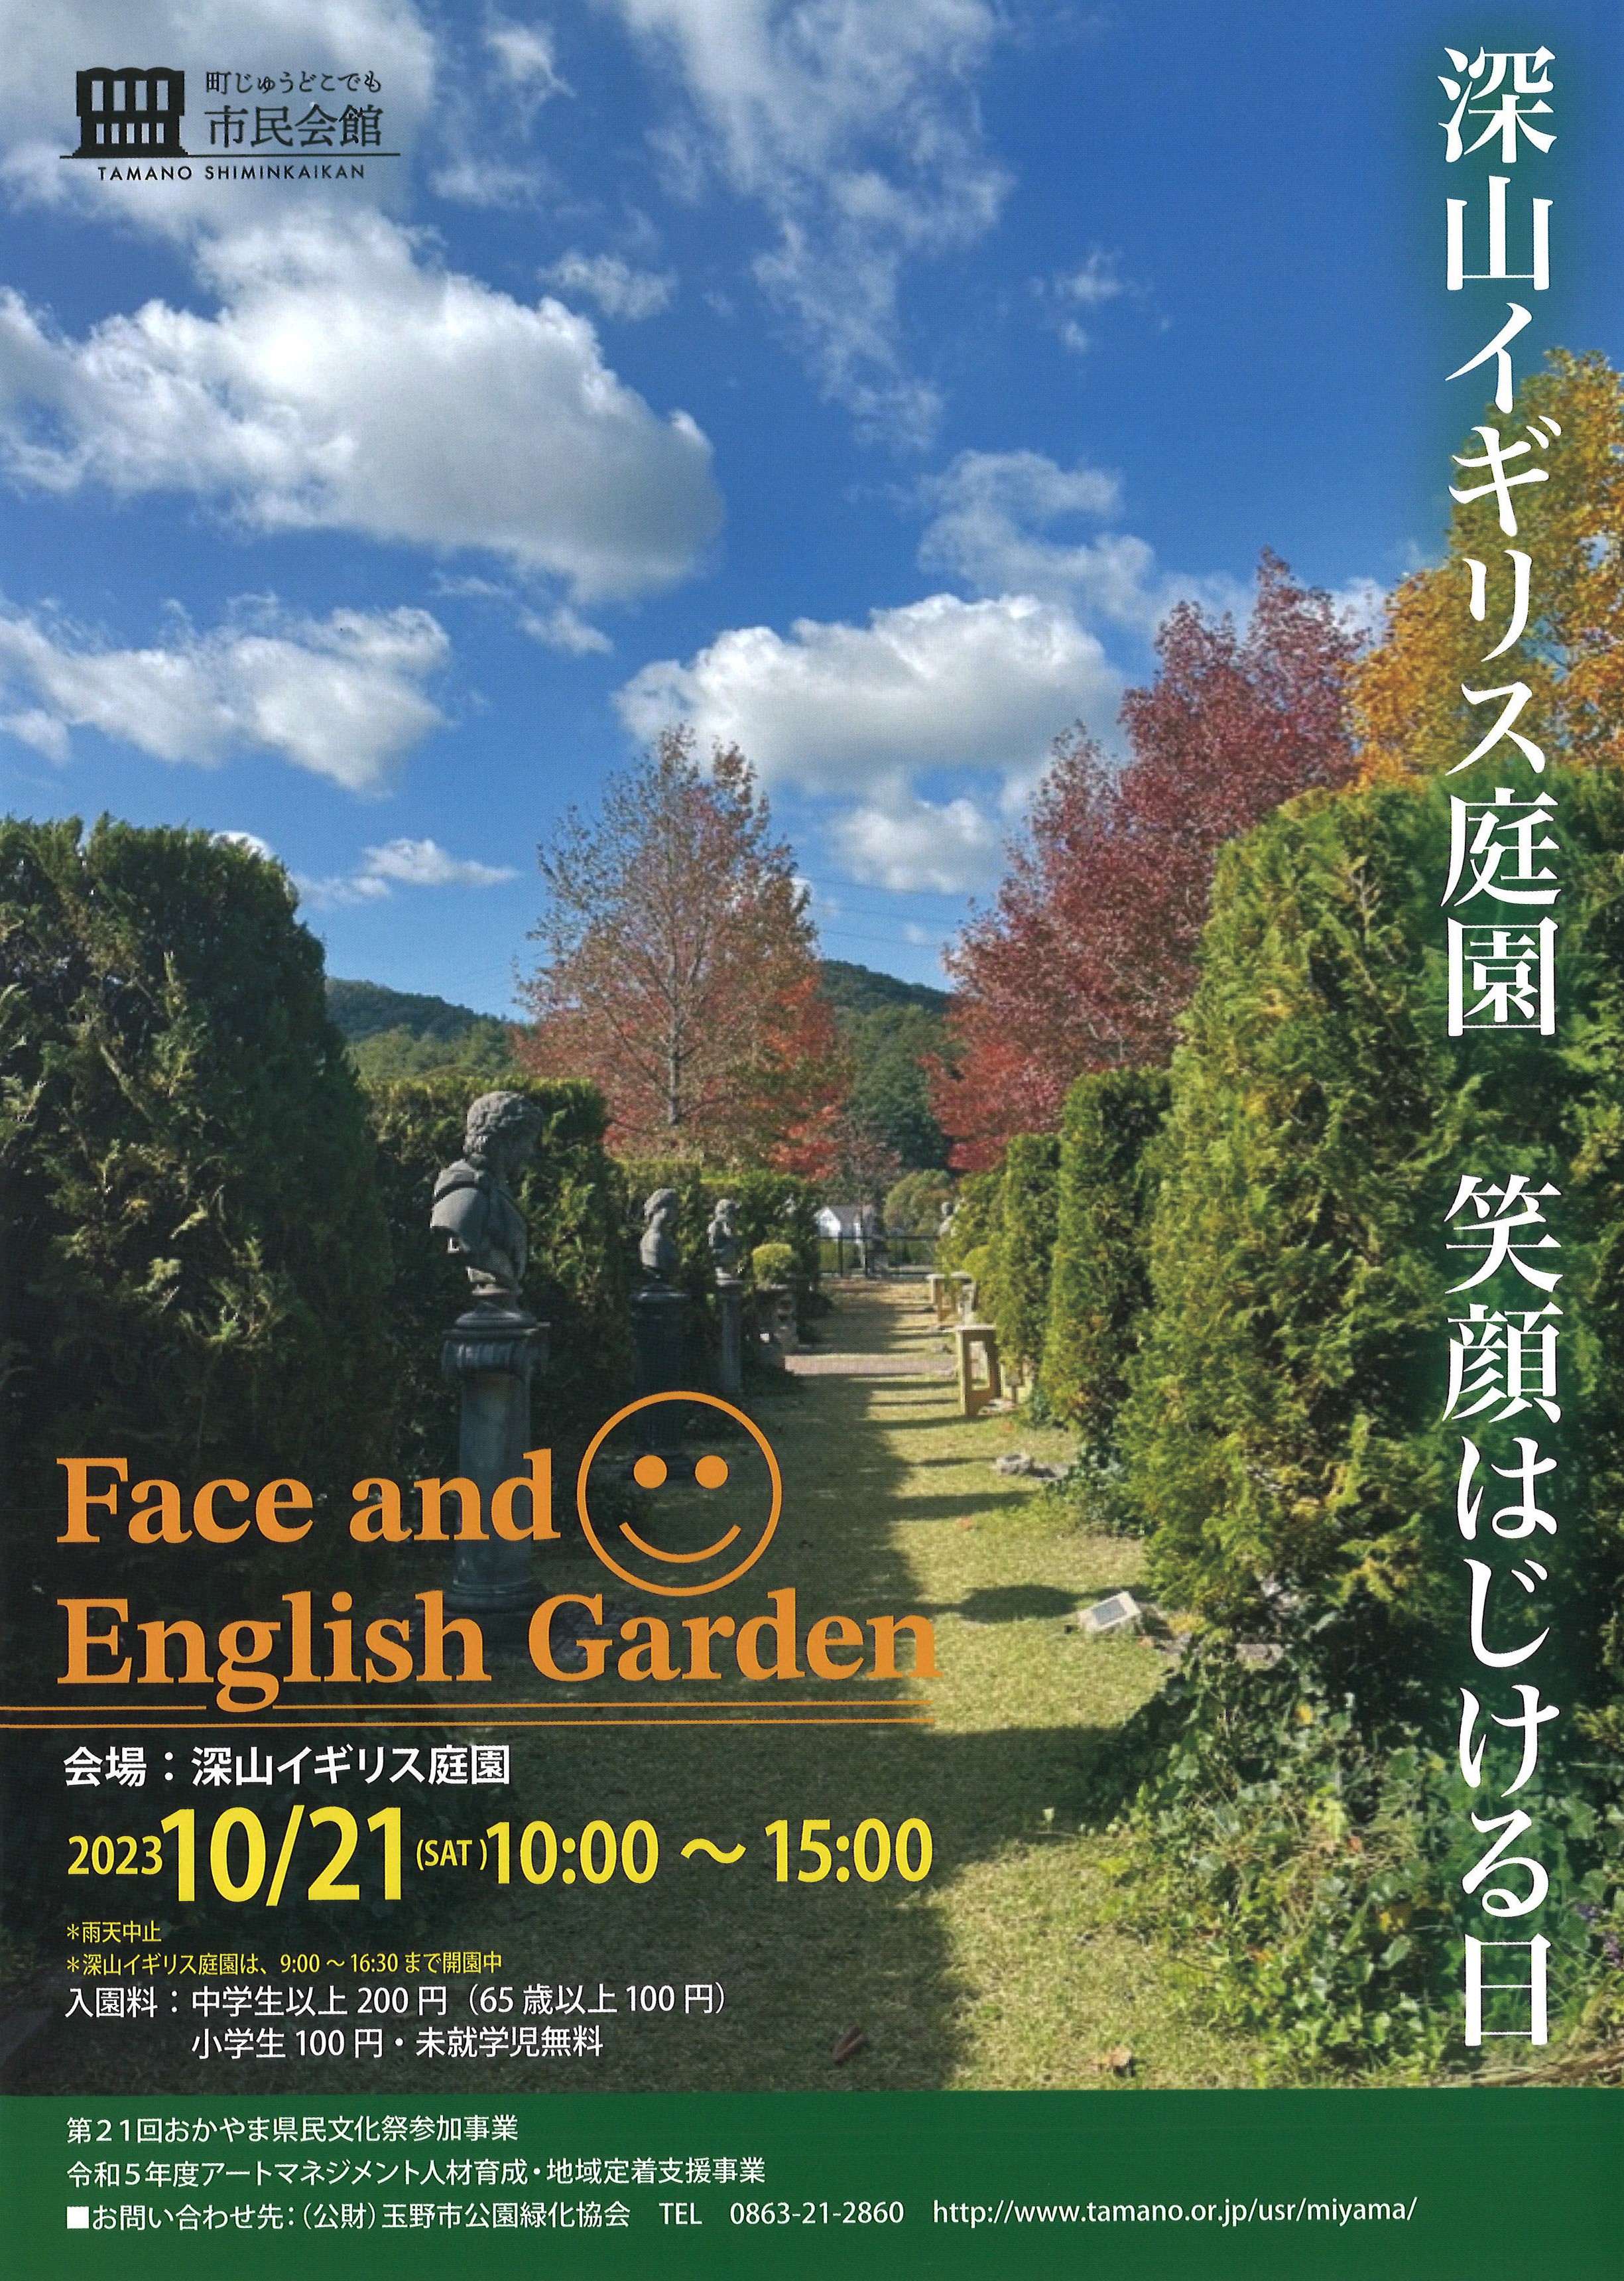 Face and English Garden